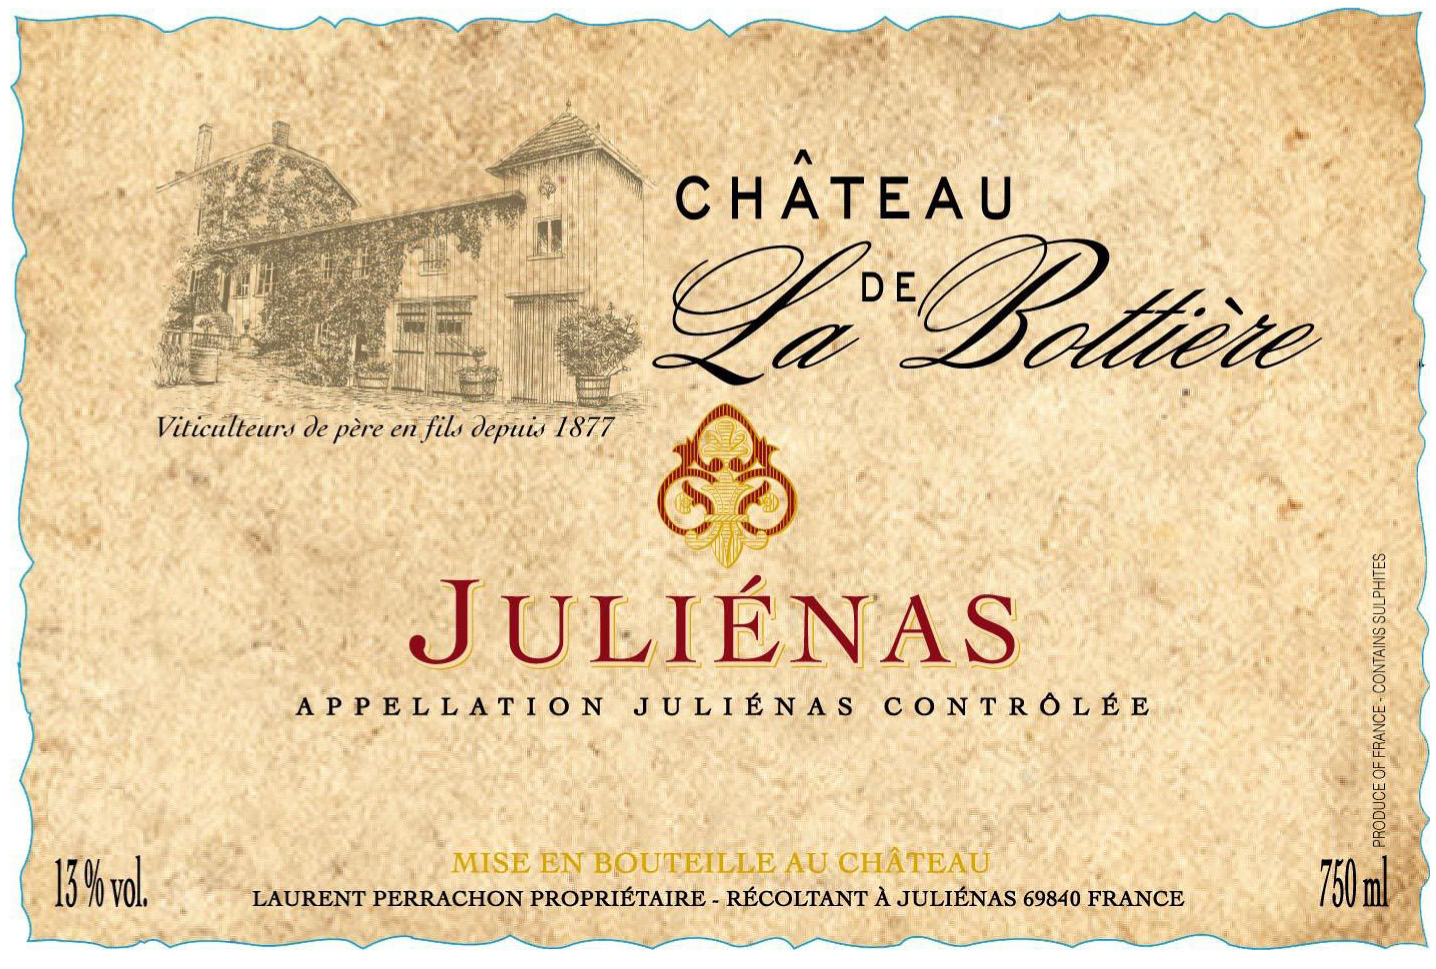 Chateau de la Bottiere - Julienas label